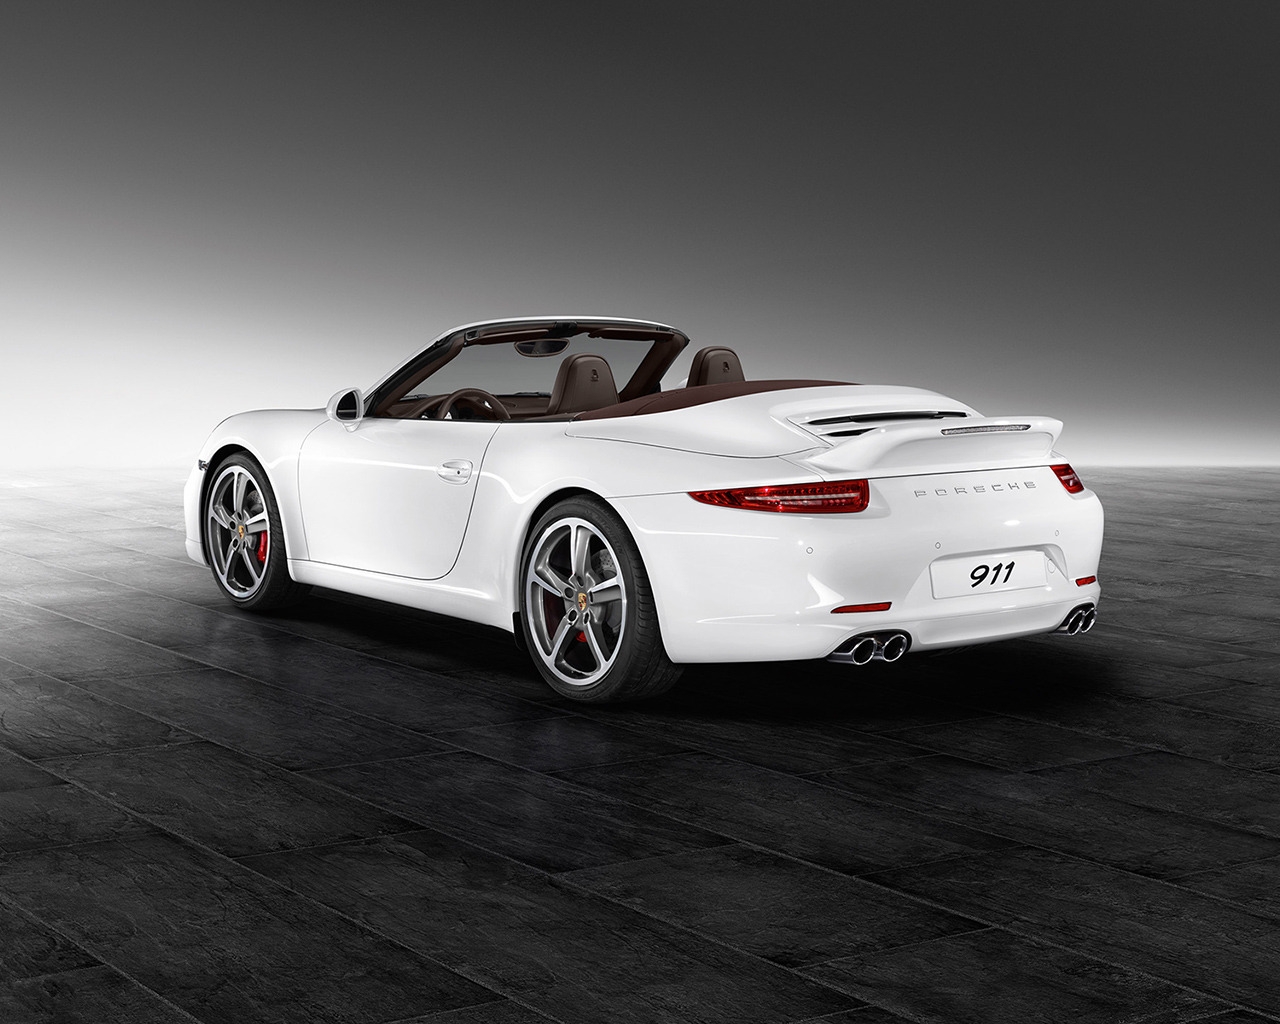 White Porsche 911 Carrera S for 1280 x 1024 resolution